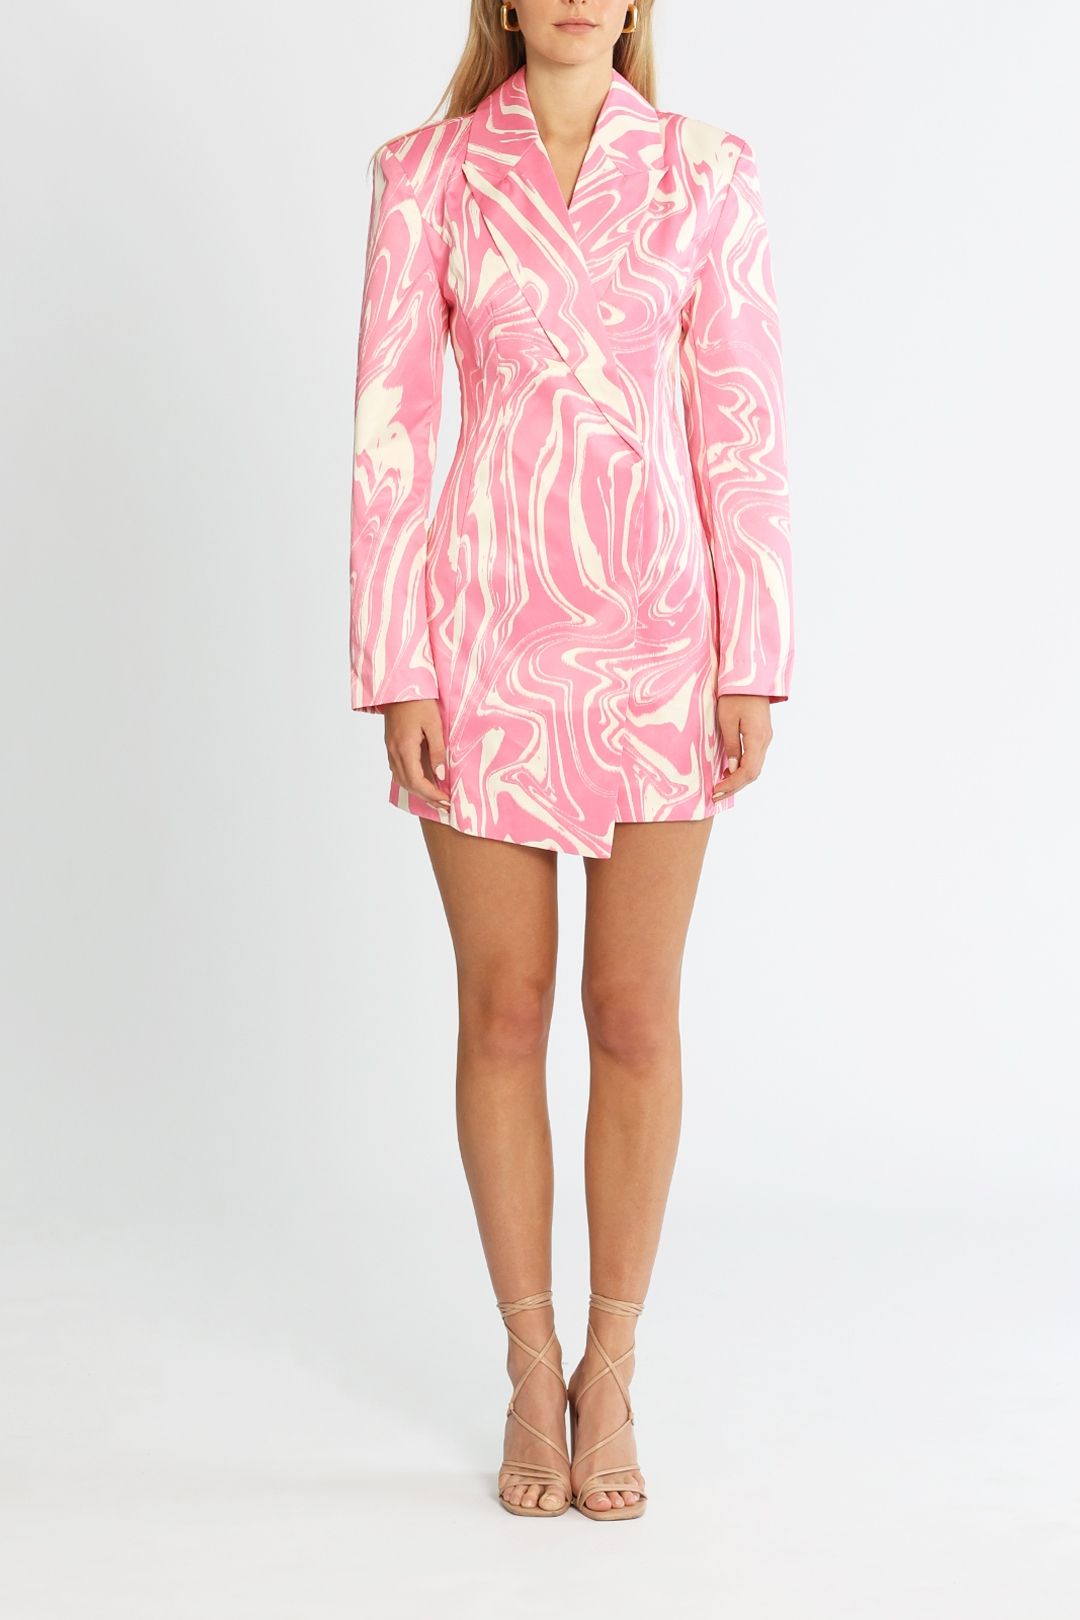 Rotate By Birger Christensen Shannon Aurora Pink Blazer Dress